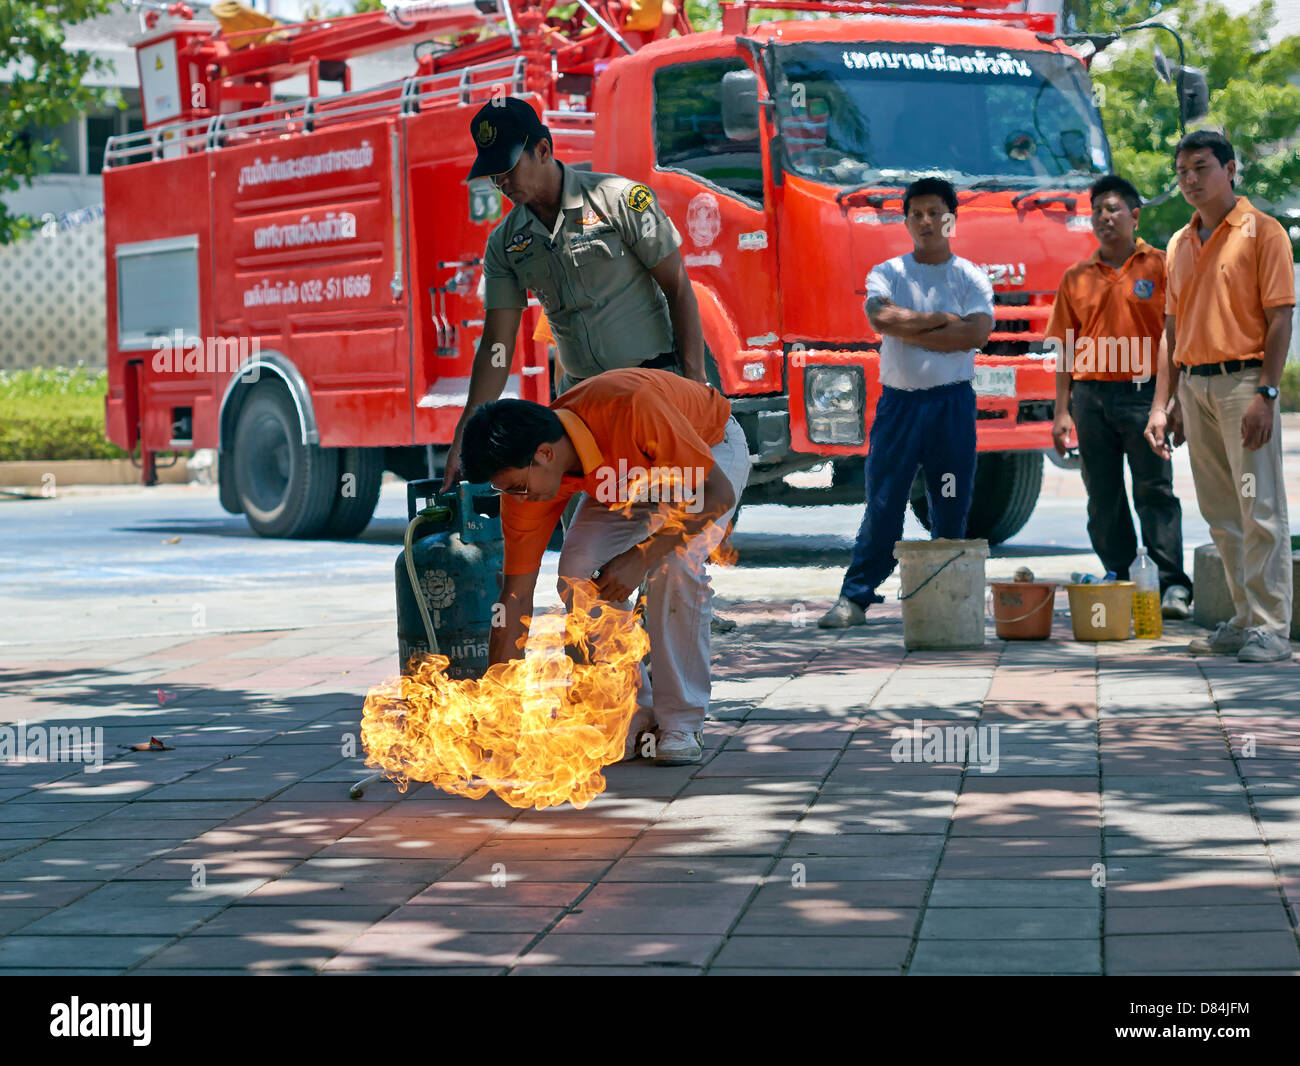 Formation sur la sécurité incendie des appareils domestiques. Un agent d'incendie thaïlandais a démontré le risque potentiel d'incendie d'une bouteille de gaz propane domestique. Banque D'Images